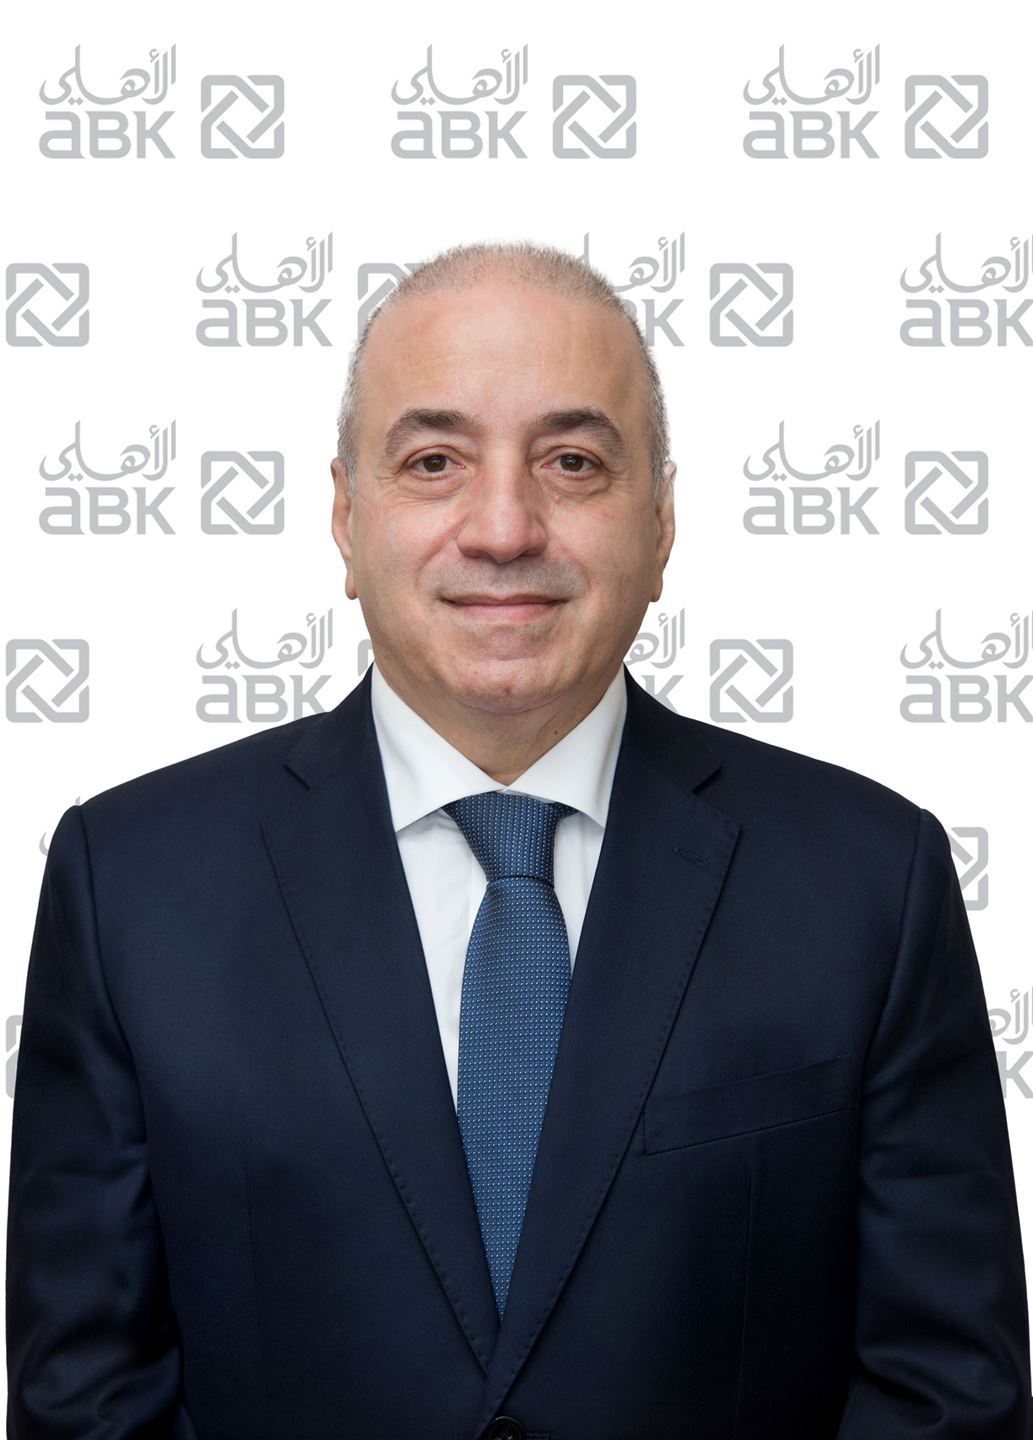 السيد جورج ريشاني، الرئيس التنفيذي للمجموعة في البنك الأهلي الكويتي